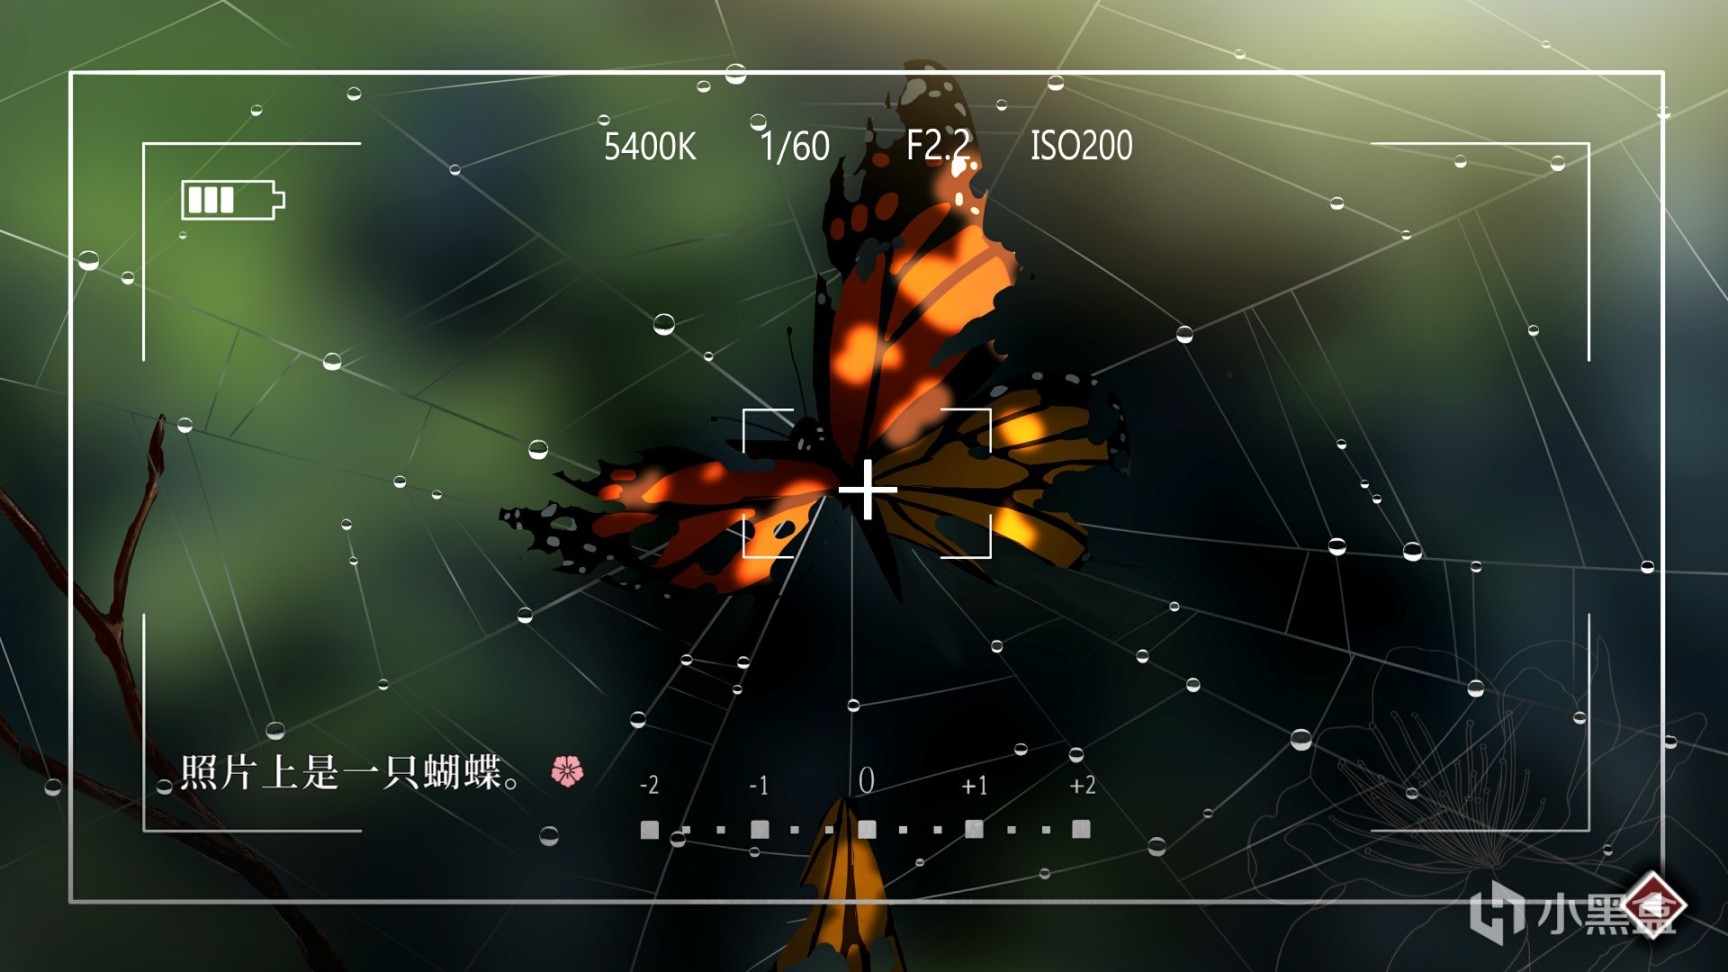 【PC游戏】折镜之蝶——葬花桃花源的完美终章